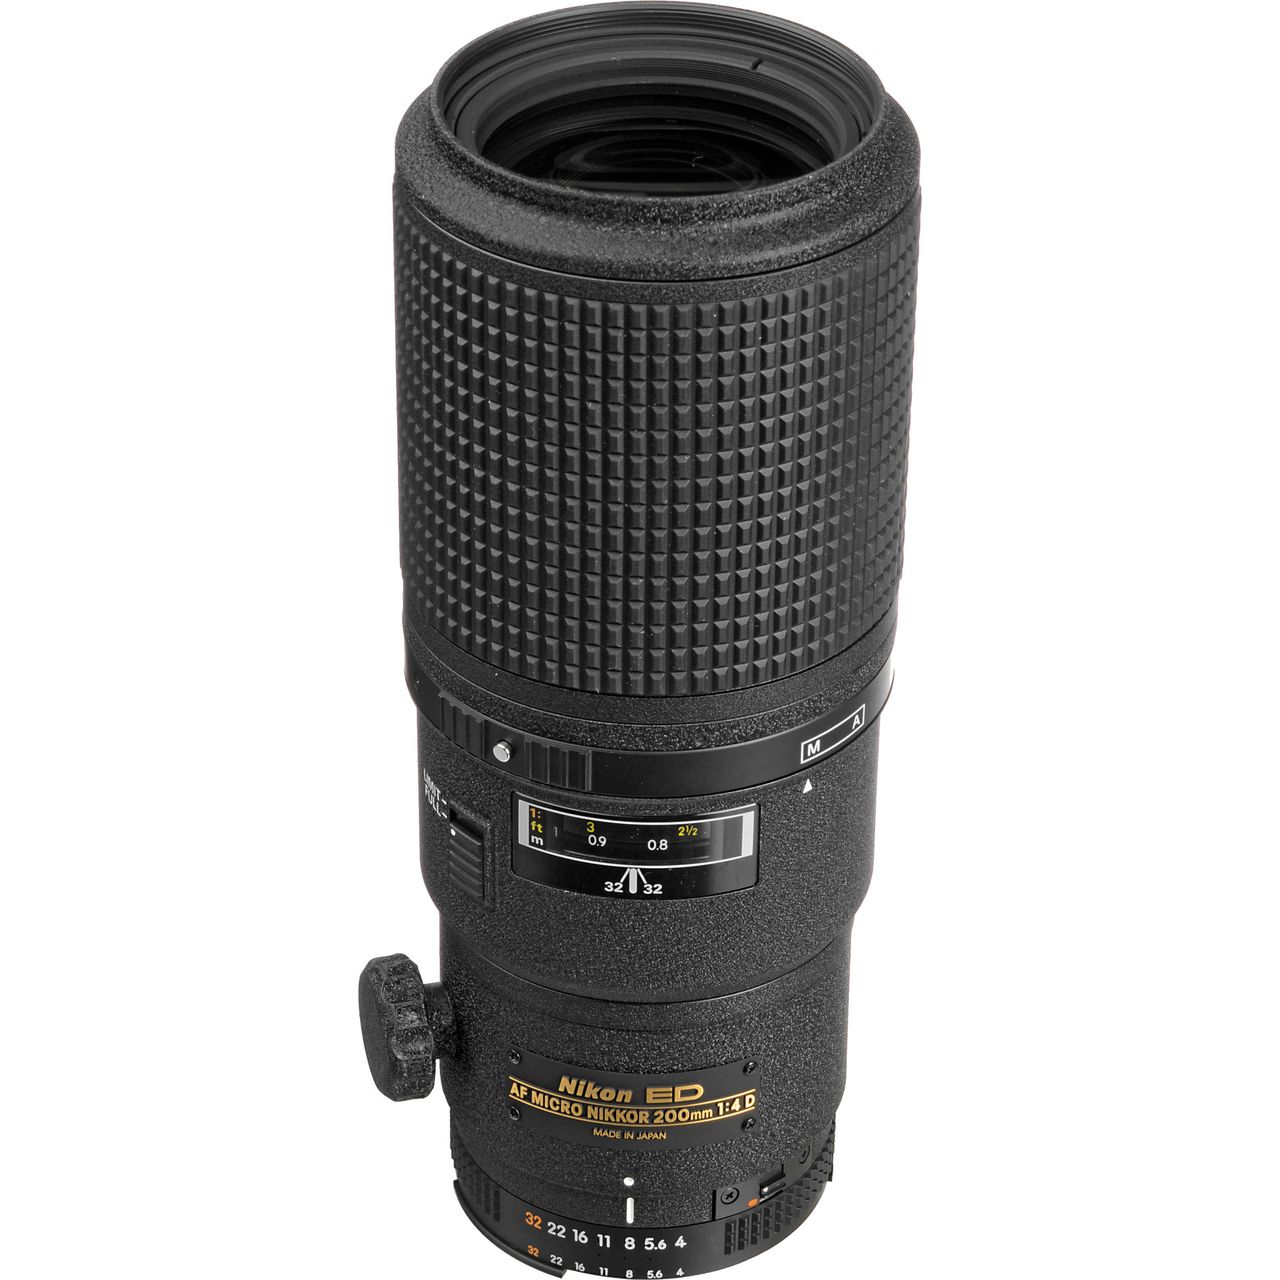 Nikon AF Micro-Nikkor 200mm f/4D ED-IF